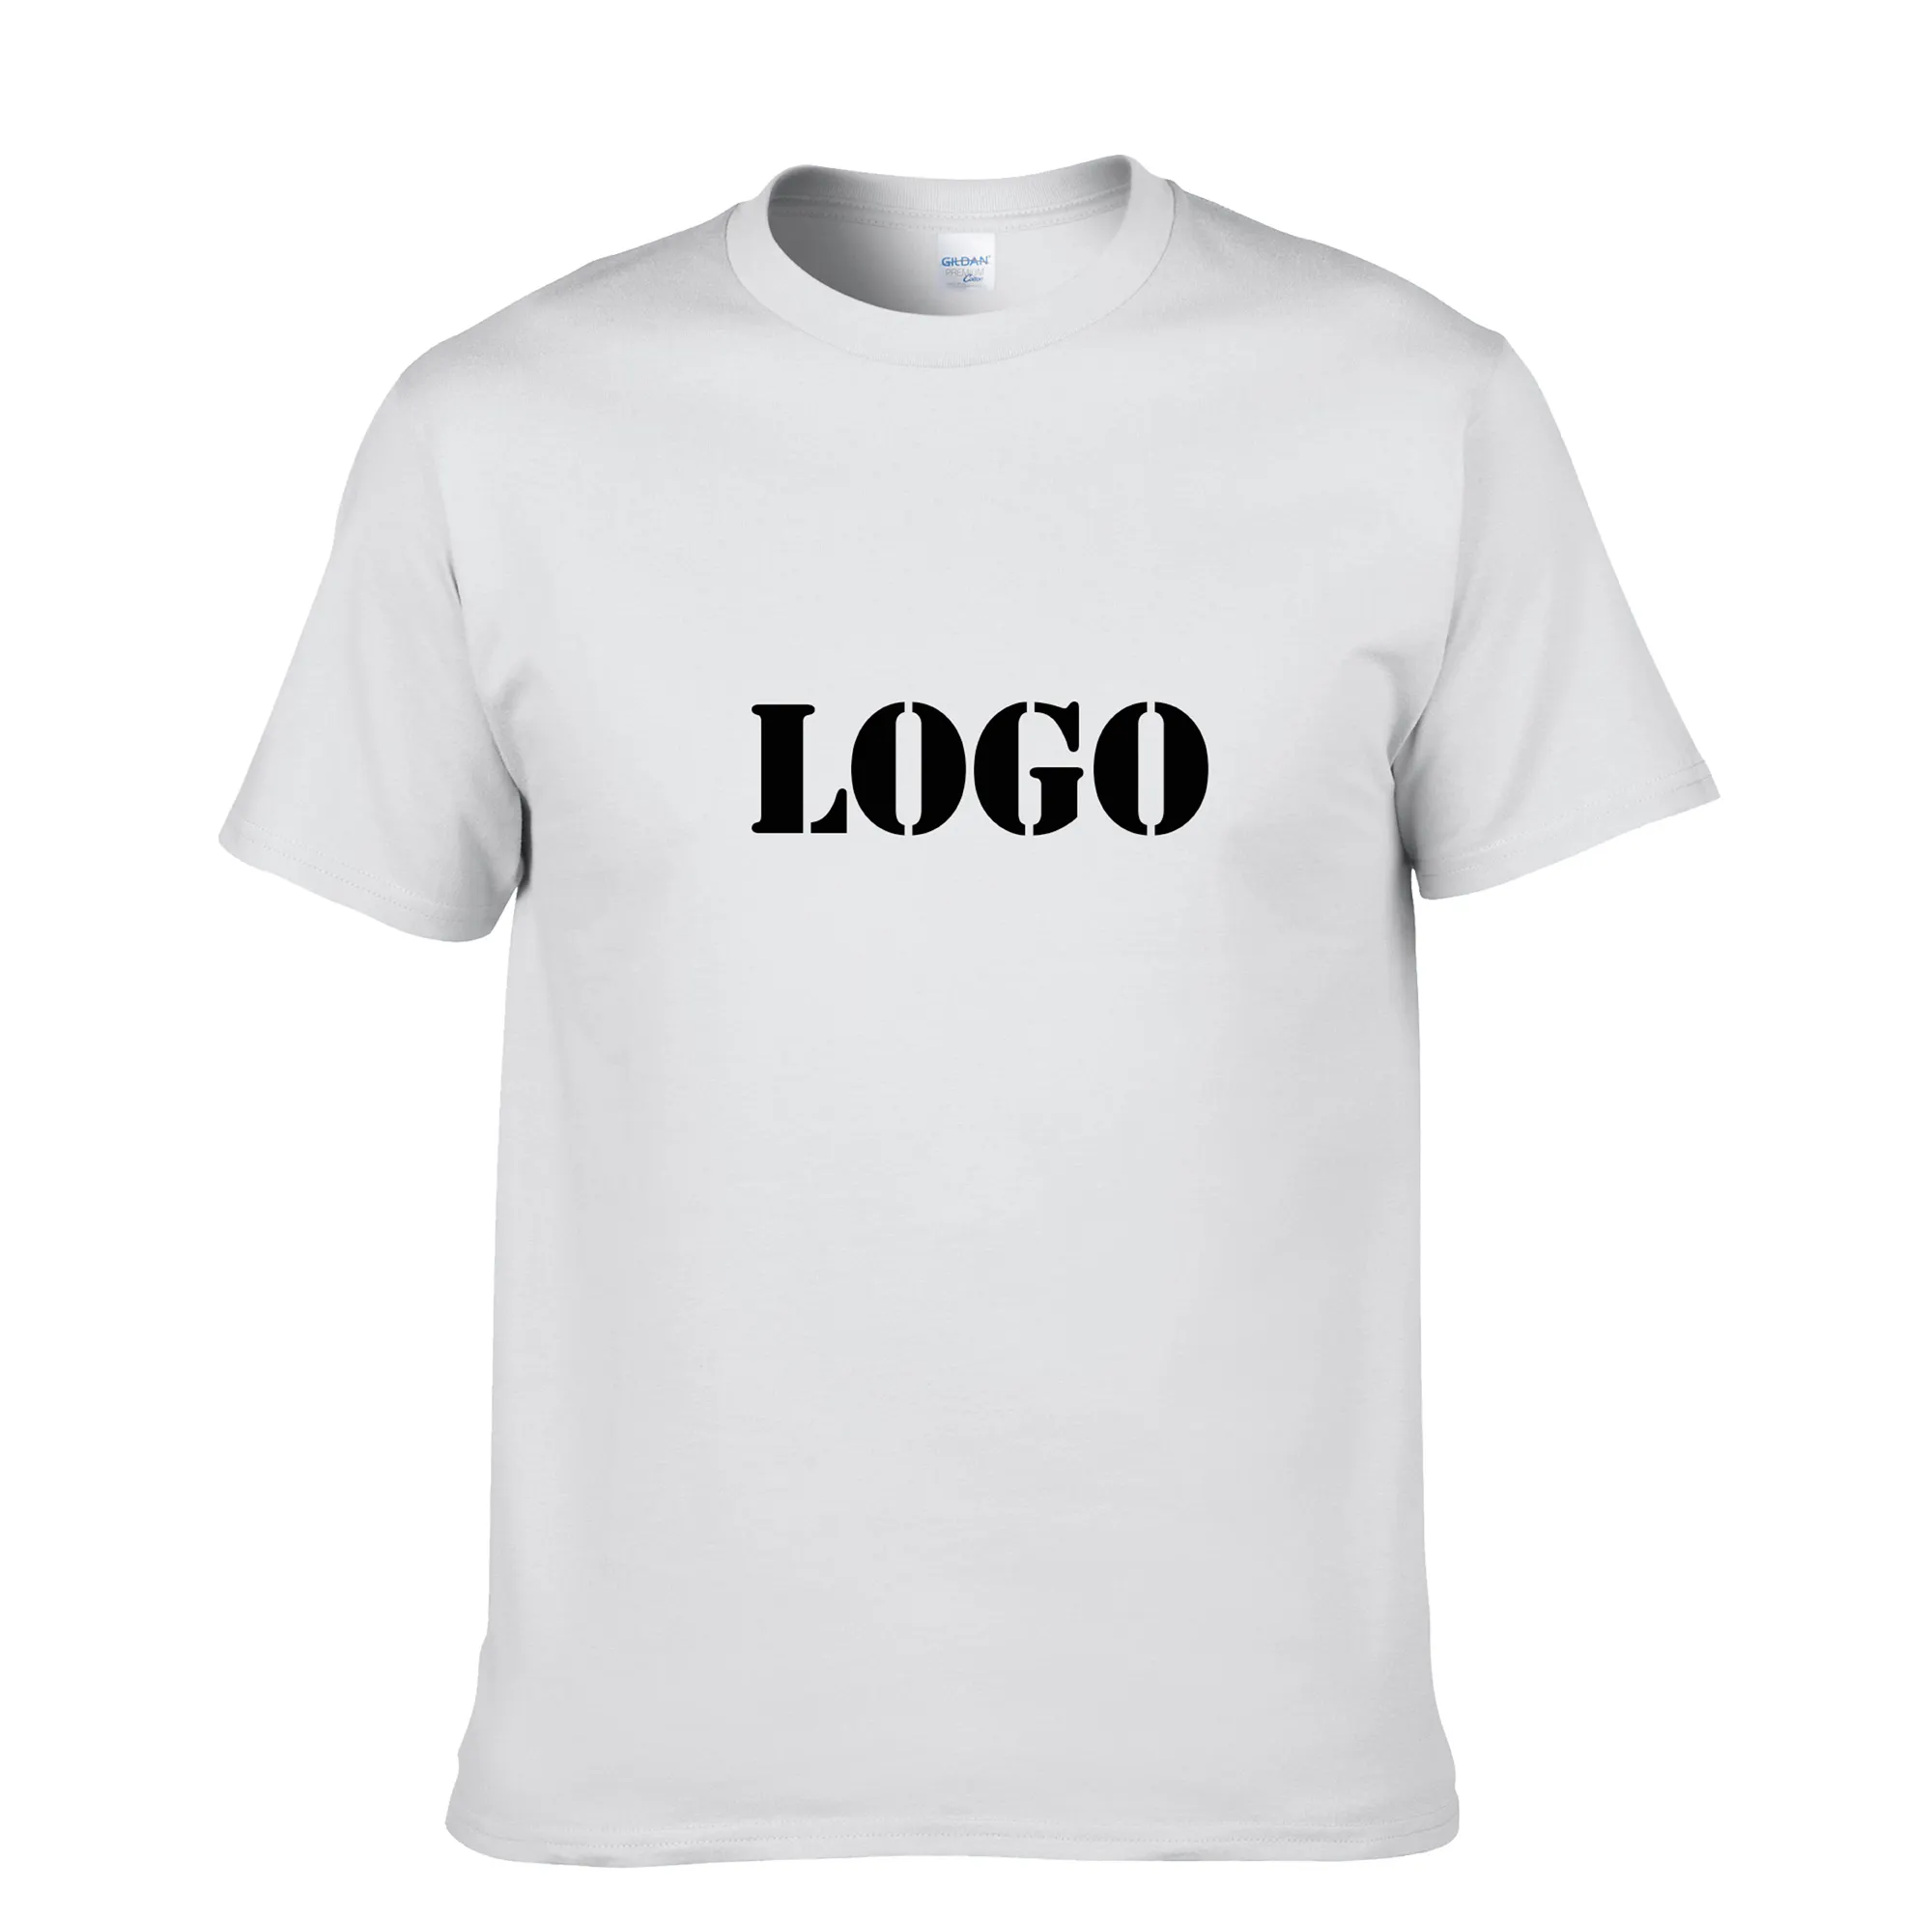 100% सूती यूनिसेक्स टी शर्ट वैकल्पिक रंग टी शर्ट मुद्रण कस्टम टी शर्ट आपके लोगो के साथ एस एम एल एक्सएल XXL XXXL 5XL 6XL